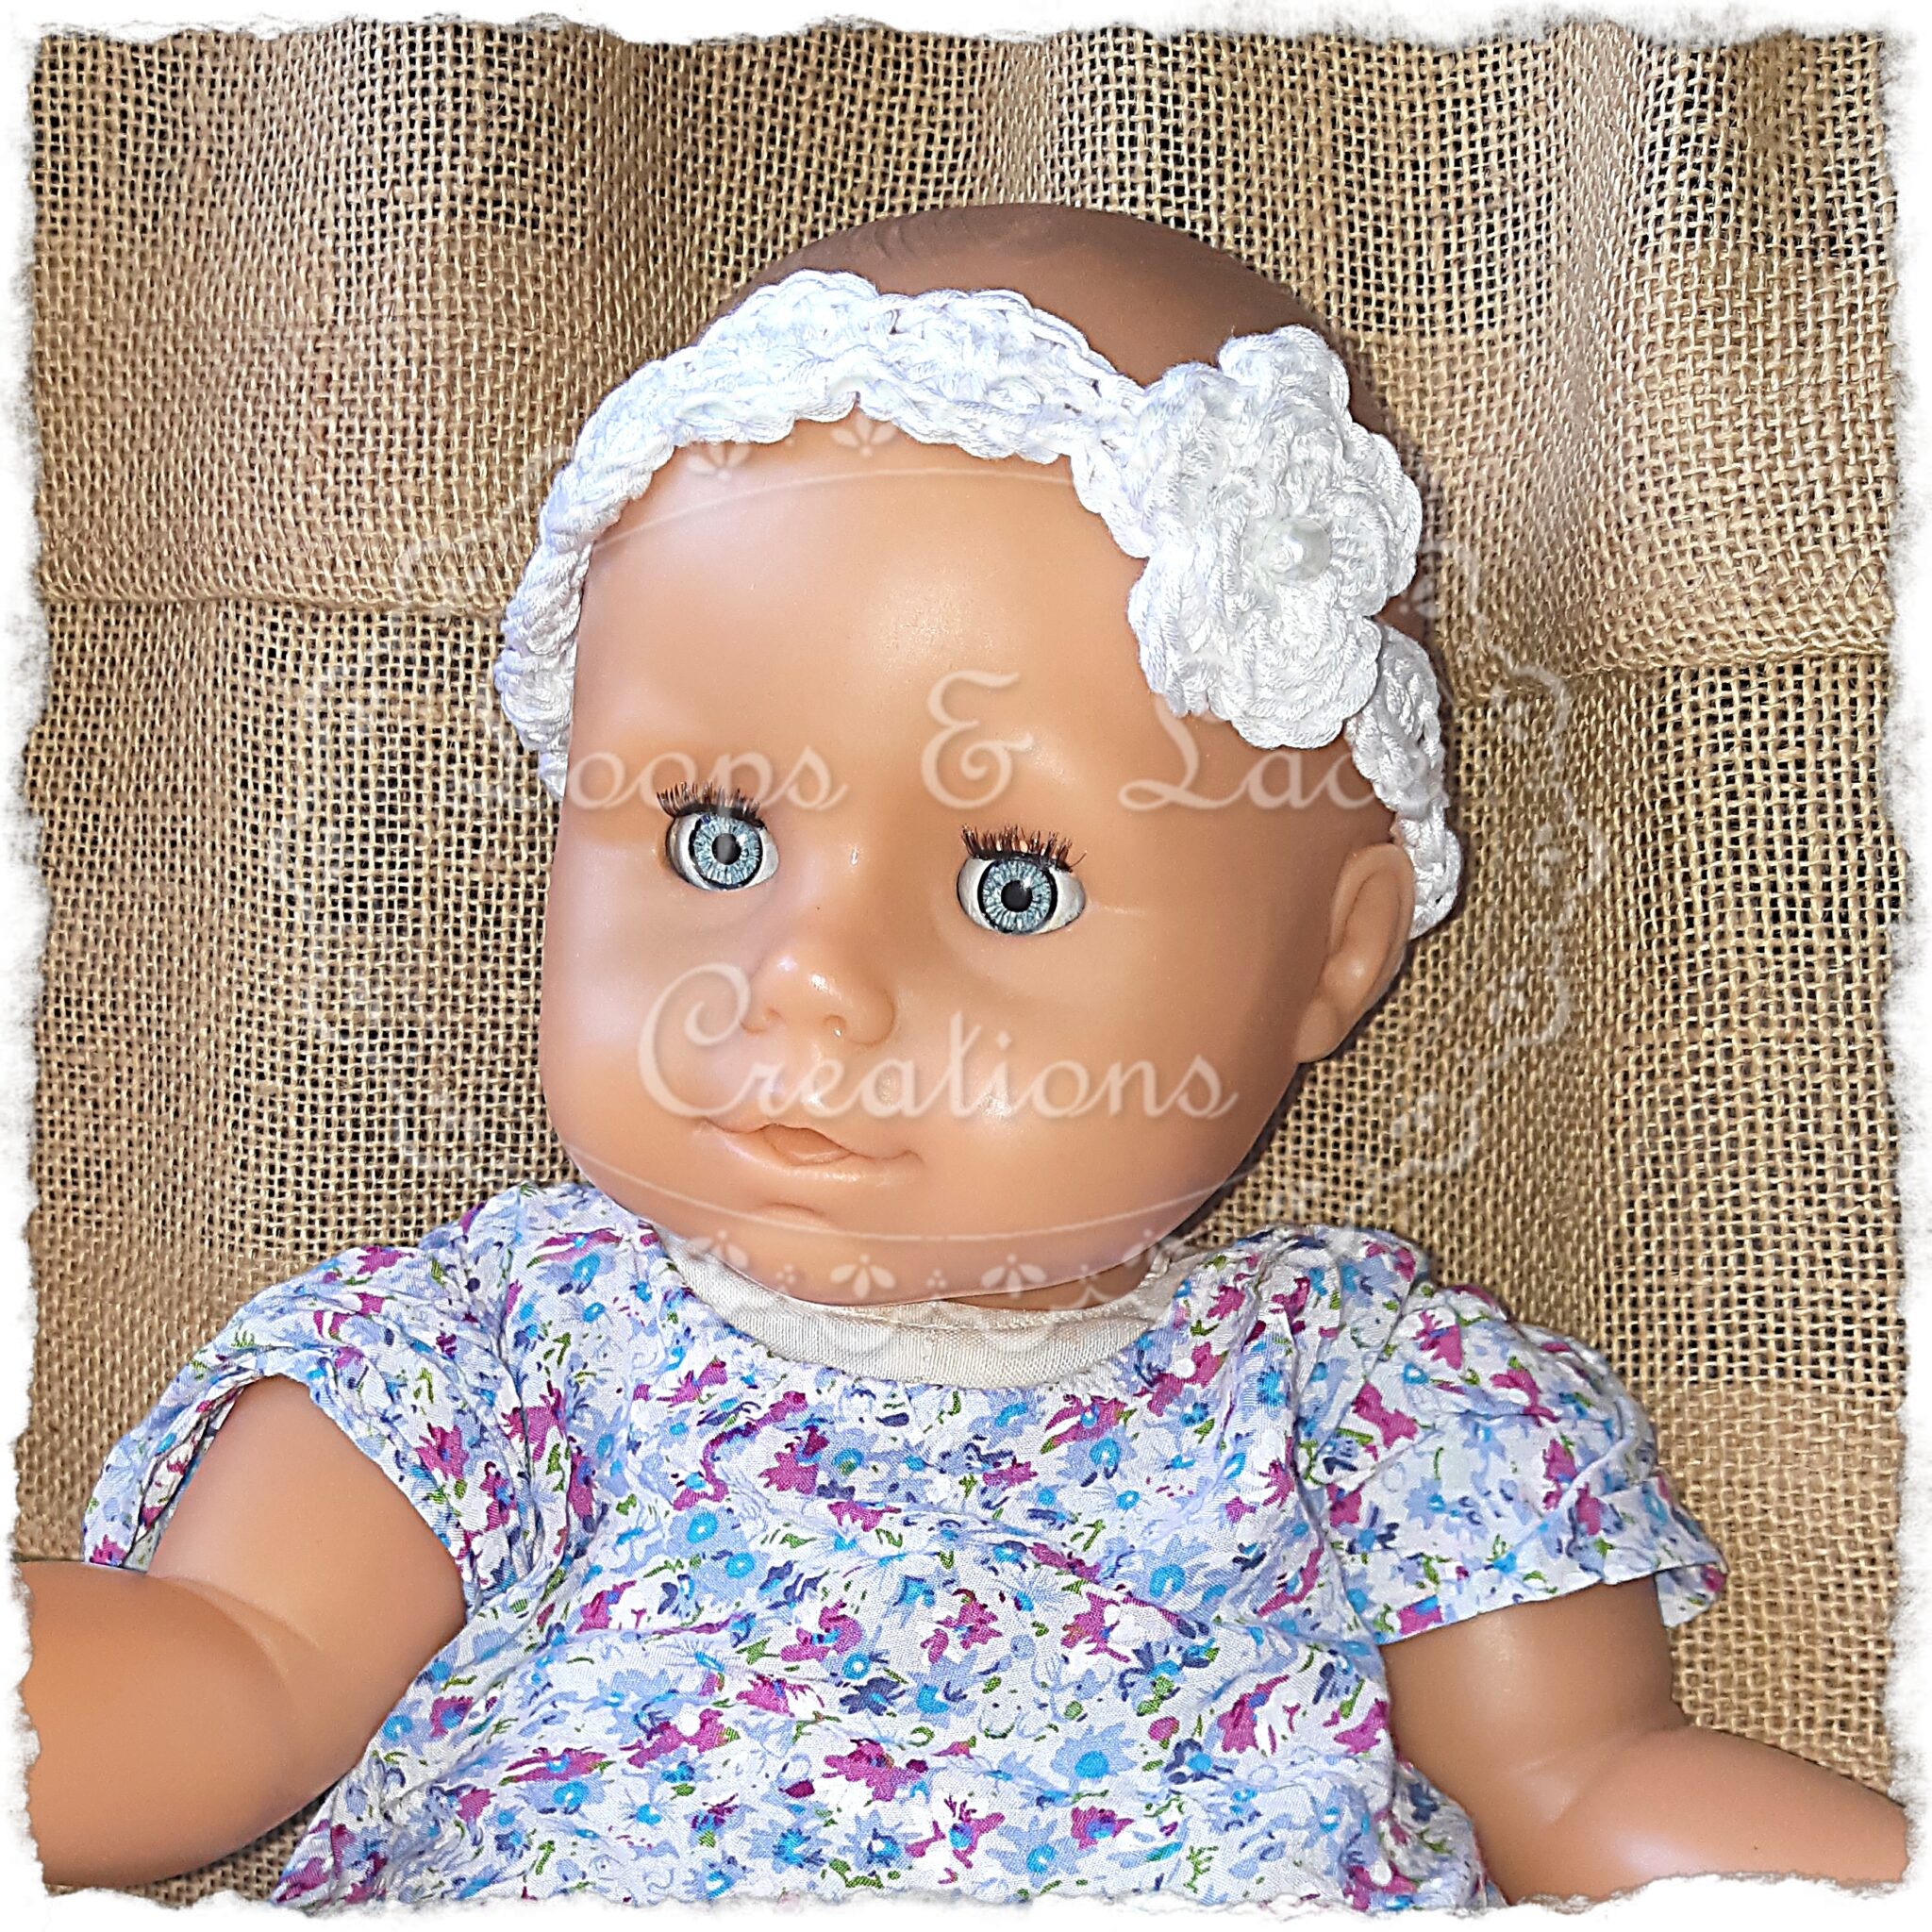 Crocheted Baby Headband - main product image